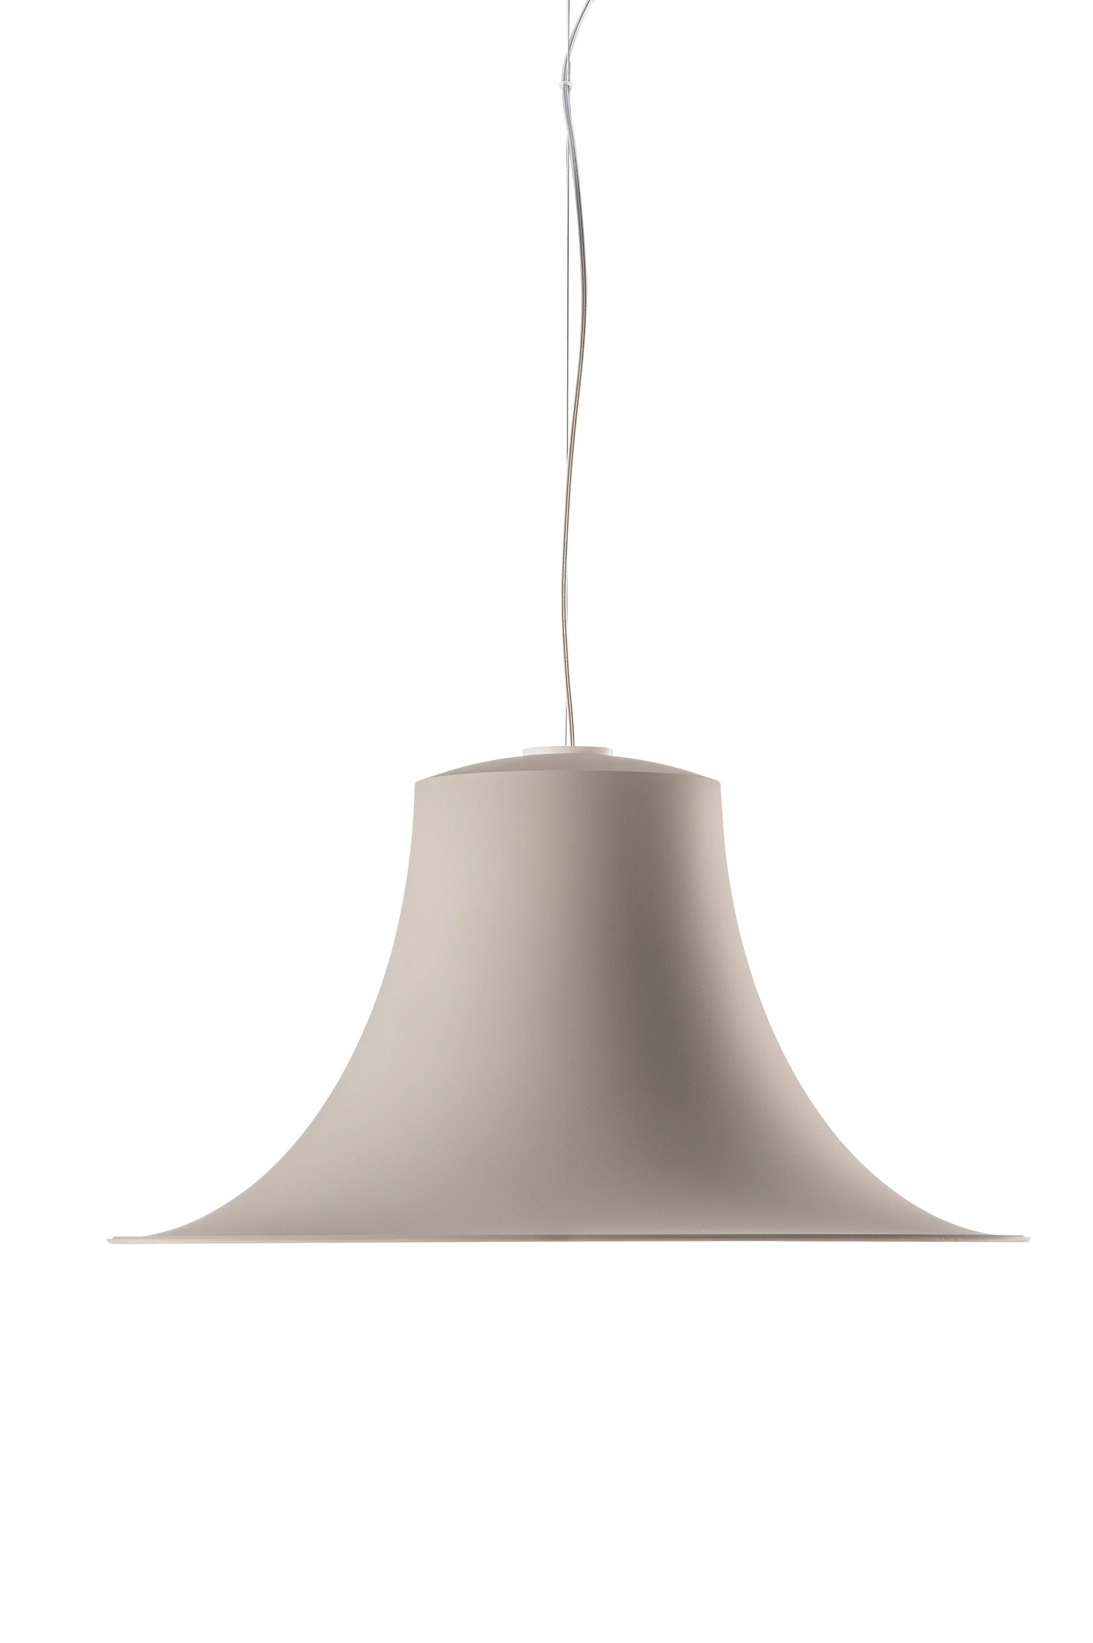 Hängelampe L004S - Design Lampe von Pedrali Soft-touch BE - beige weiss